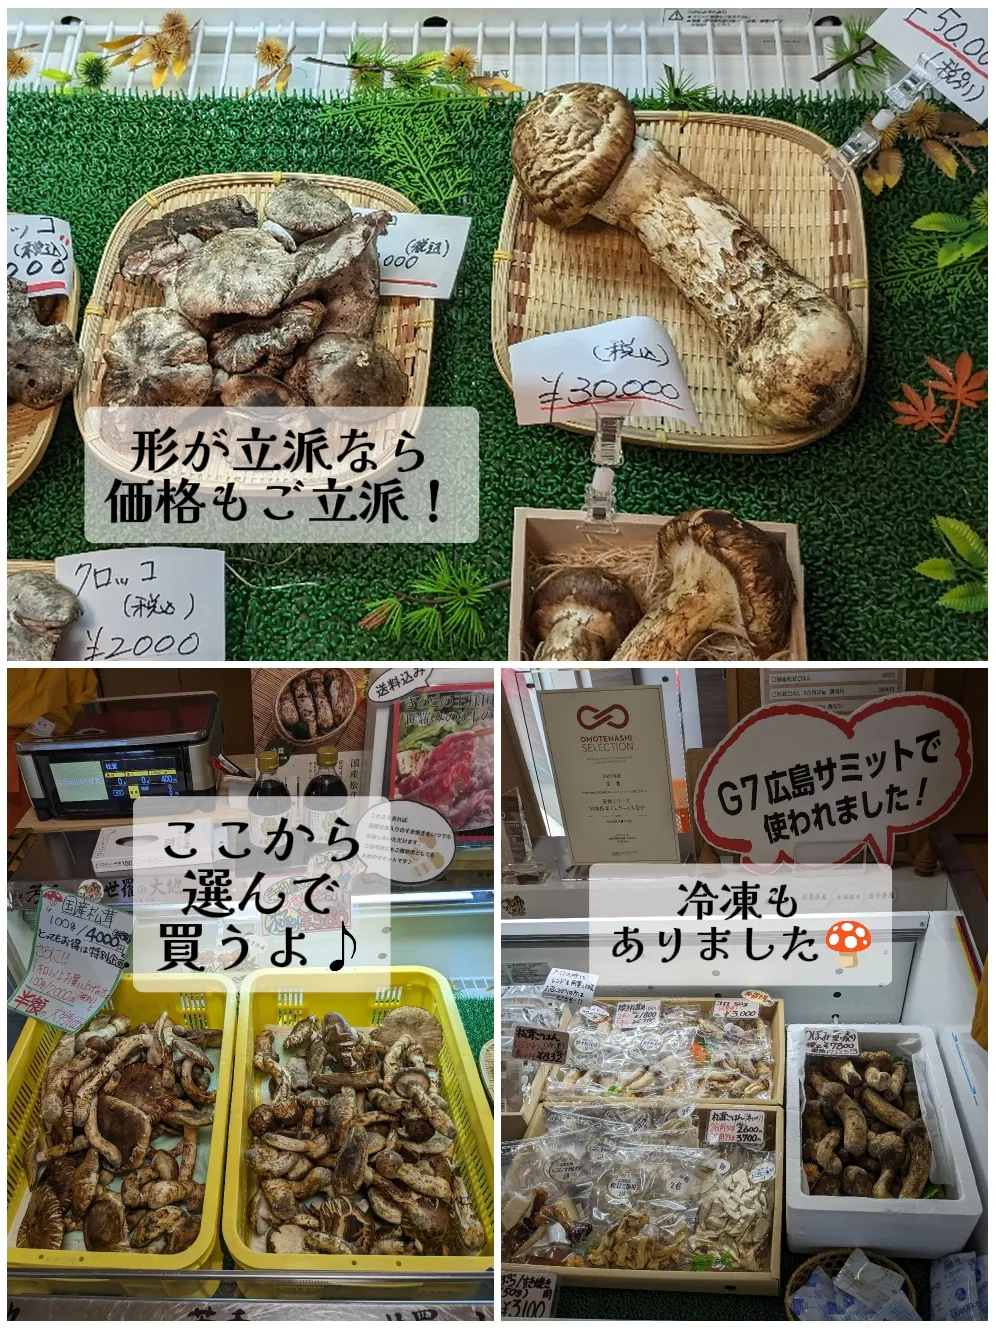 山形県産 新鮮松茸 250g 19日採取 - 野菜、果物